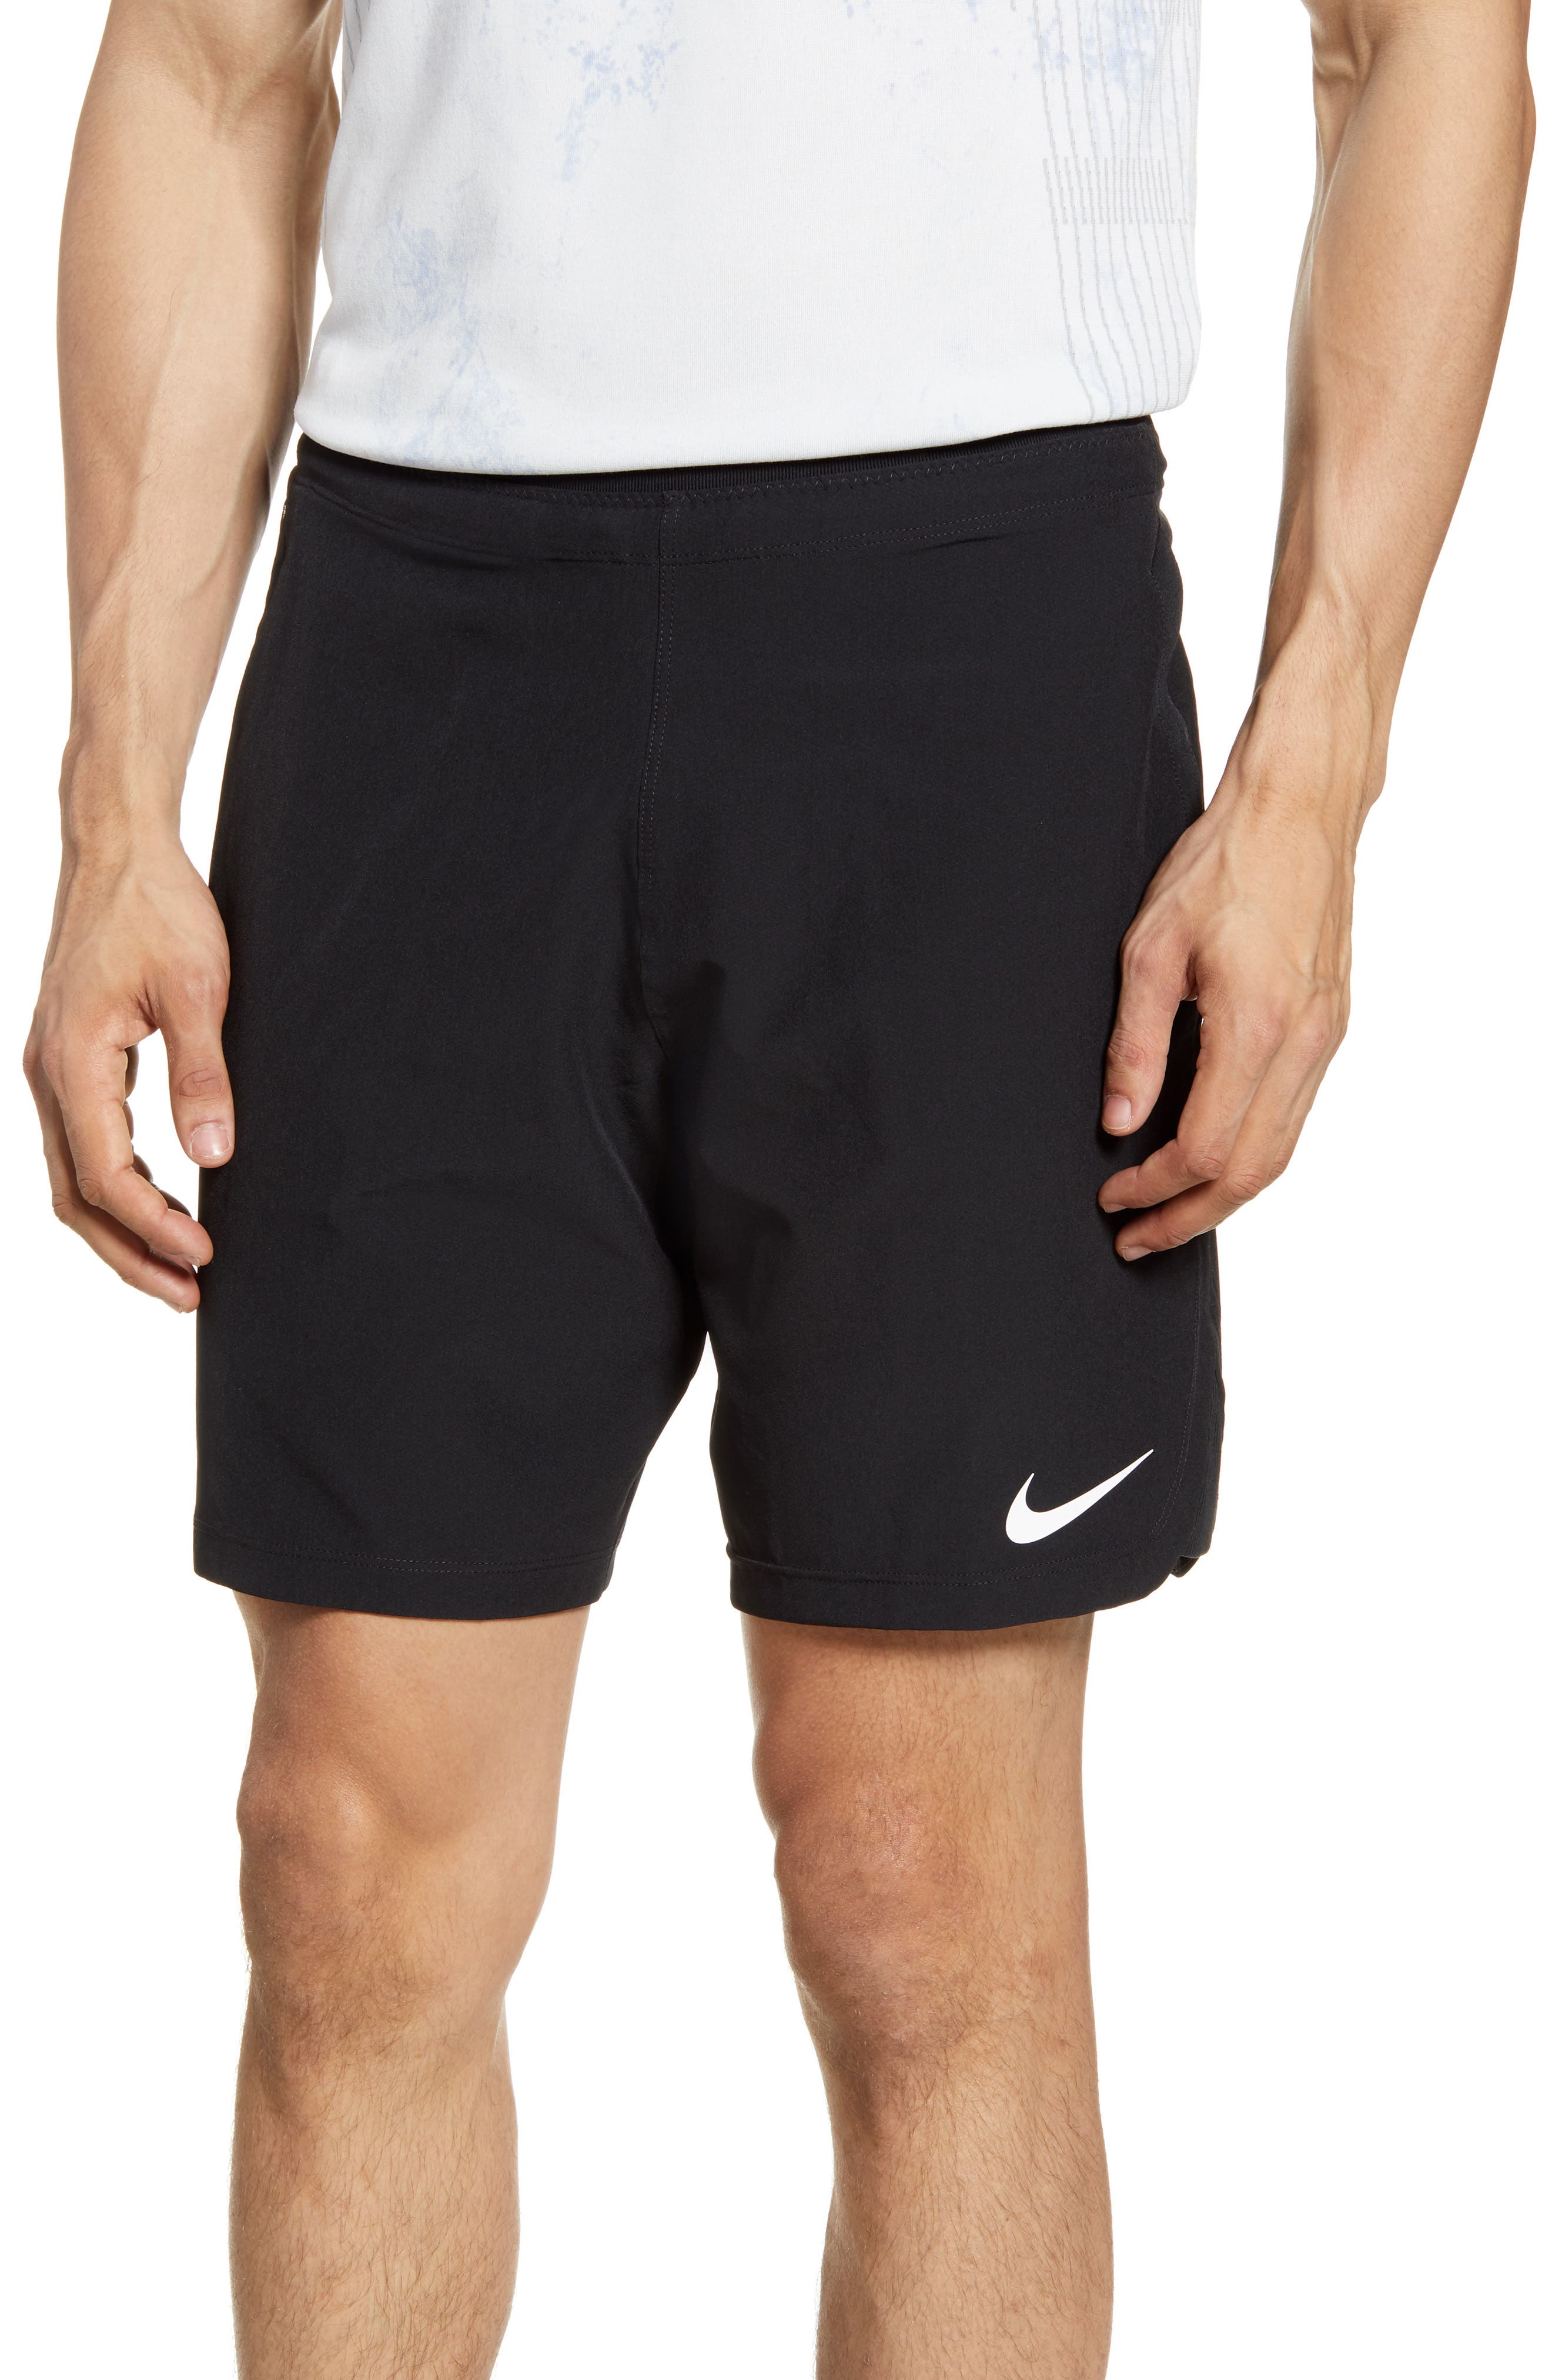 grey nike athletic shorts